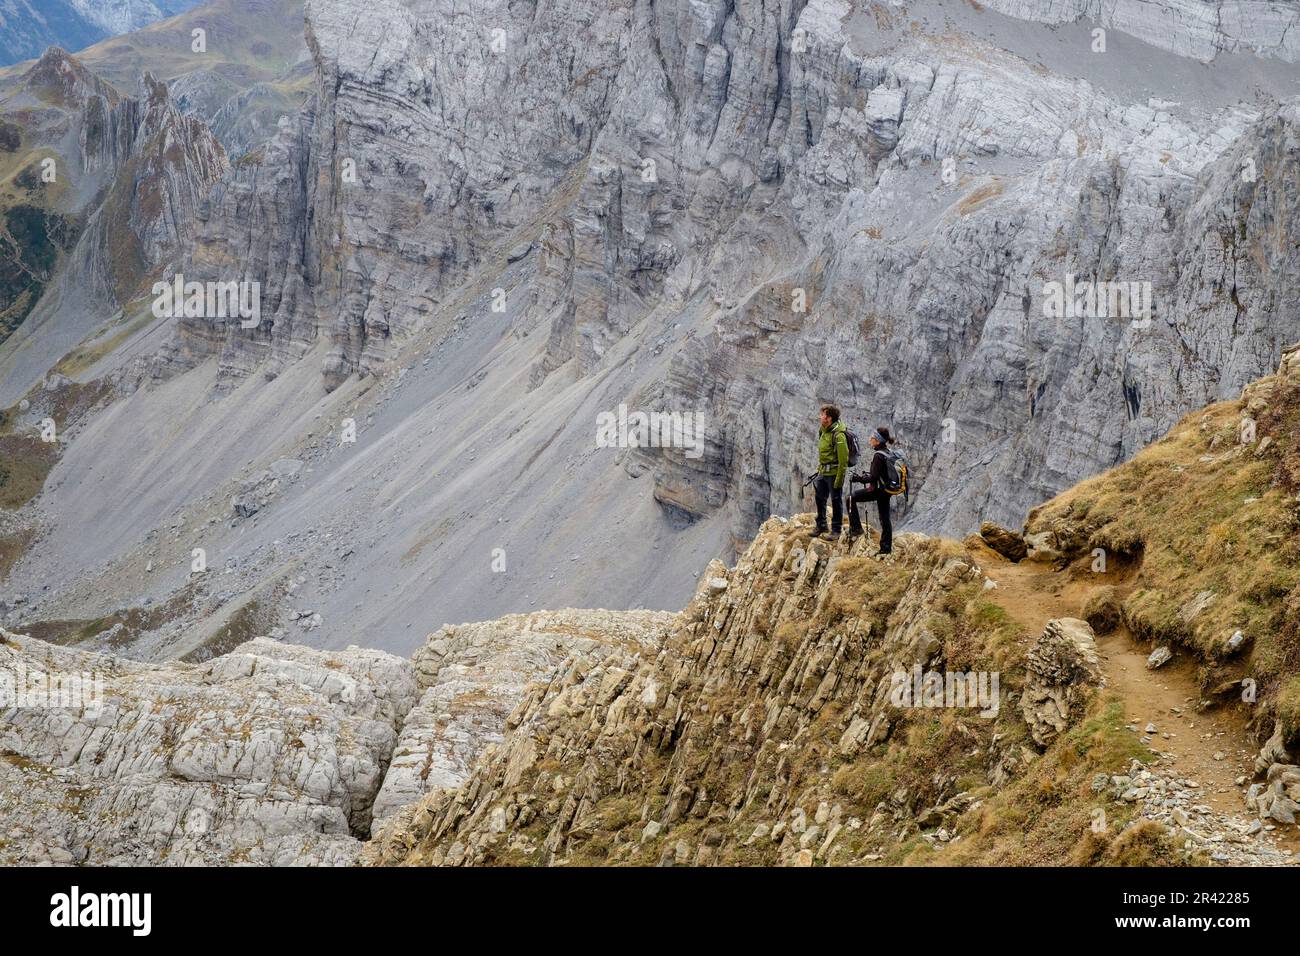 escursionistas ascendiendo el collado hacia el pico Mesa de los Tres Reyes, Parque natural de los Valles Occidentales, Huesca, cordillera de los pirineos, Spain, Europe. Stock Photo